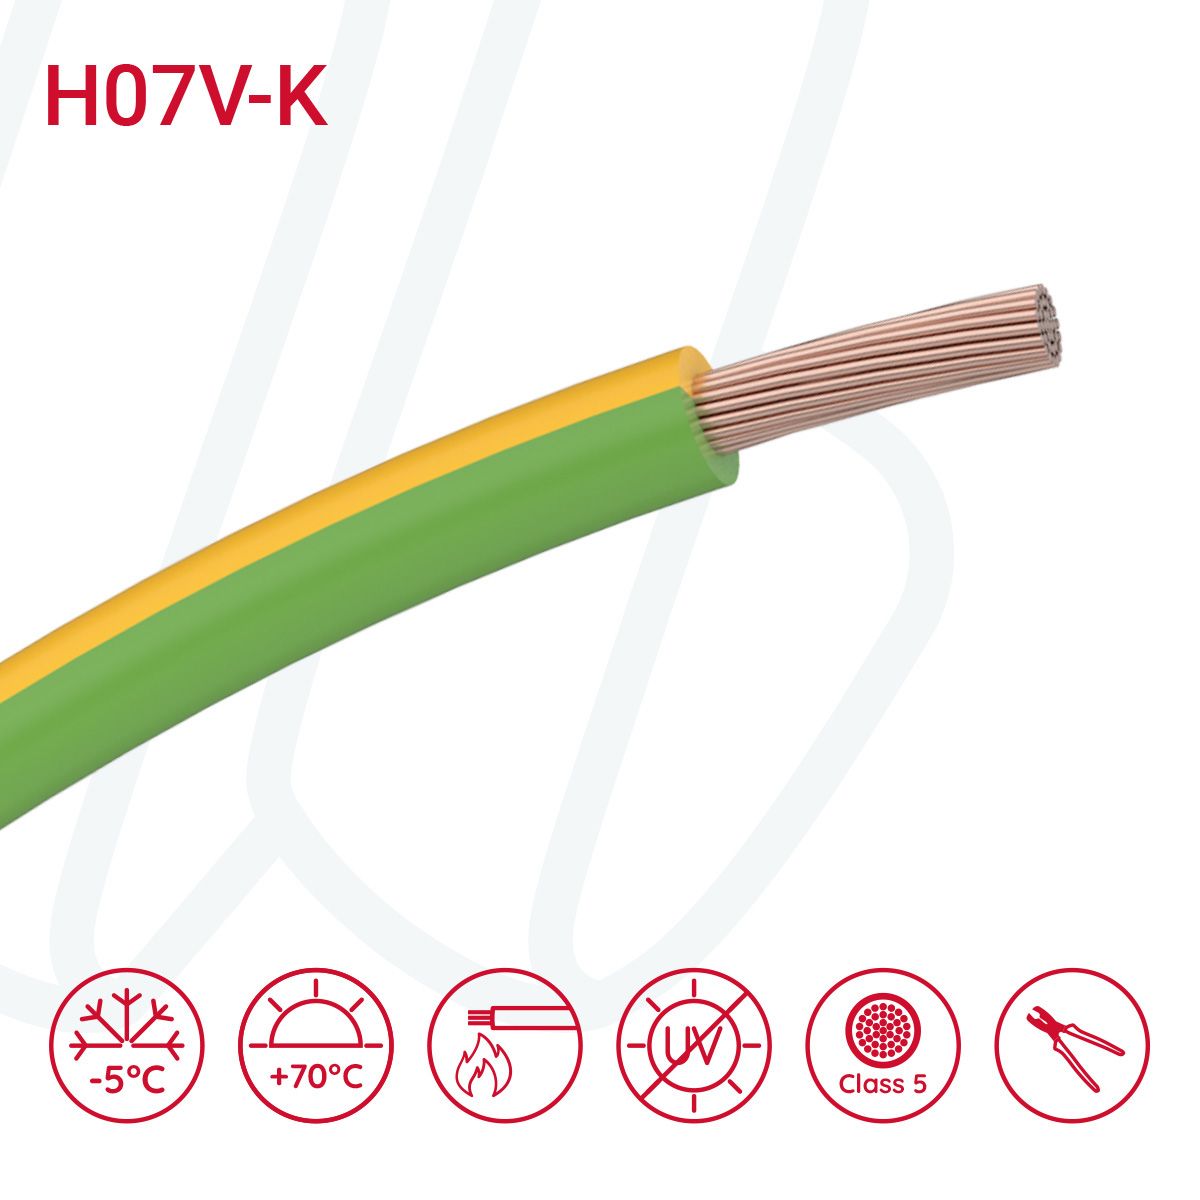 Провід монтажний гнучкий H07V-K 10 мм² жовто-зелений, 01, 10